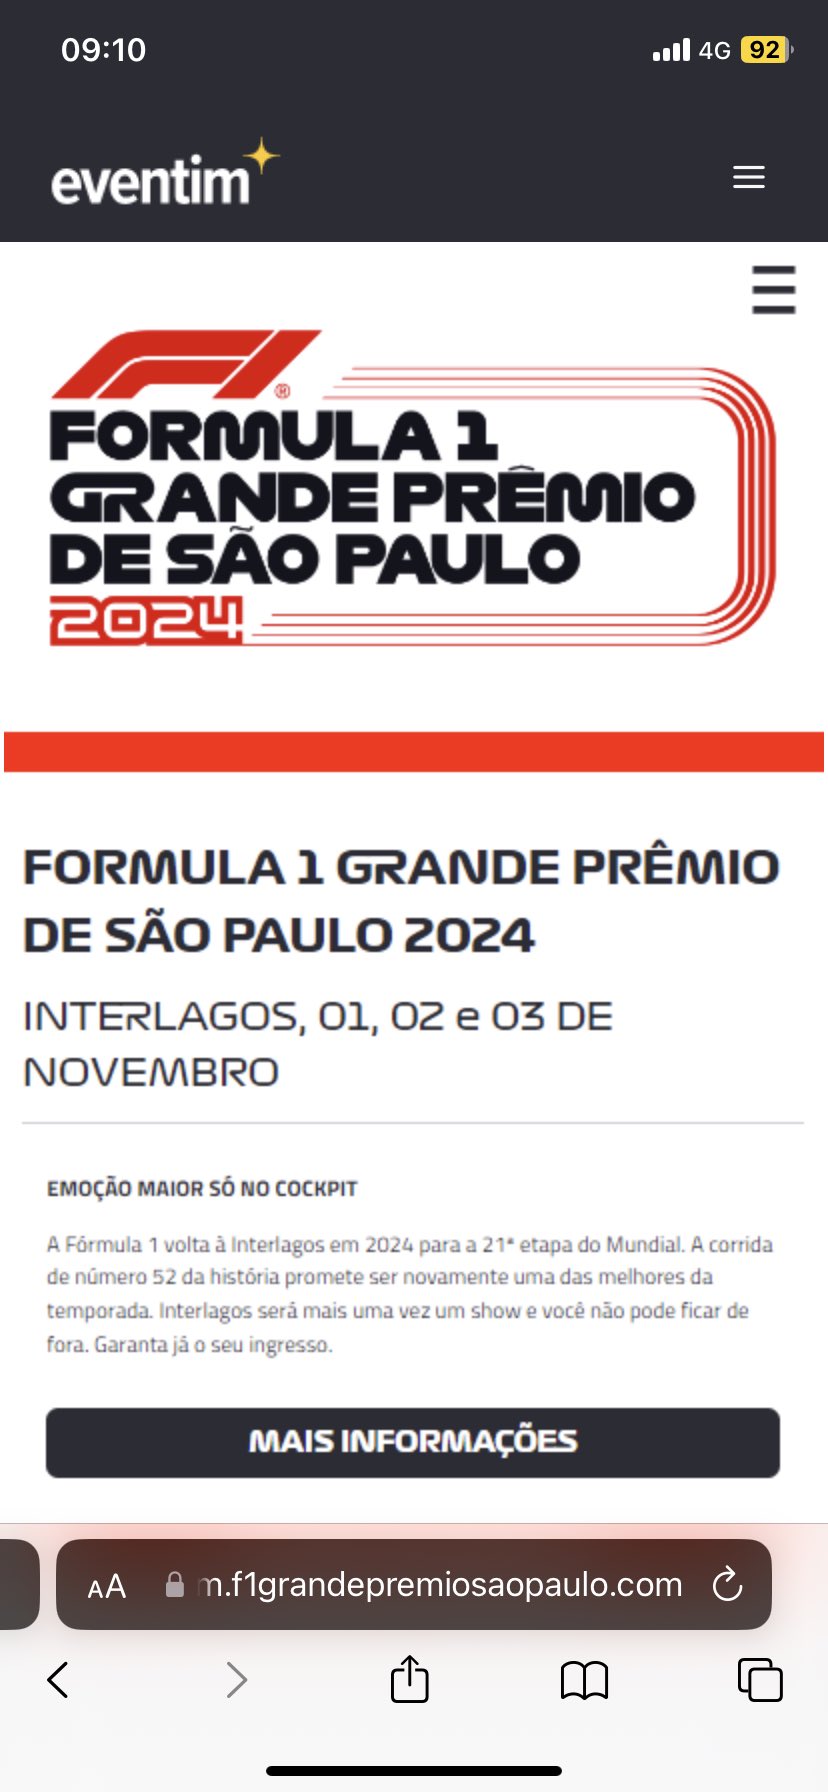 FORMULA 1 GRANDE PRÊMIO DE SÃO PAULO 2024